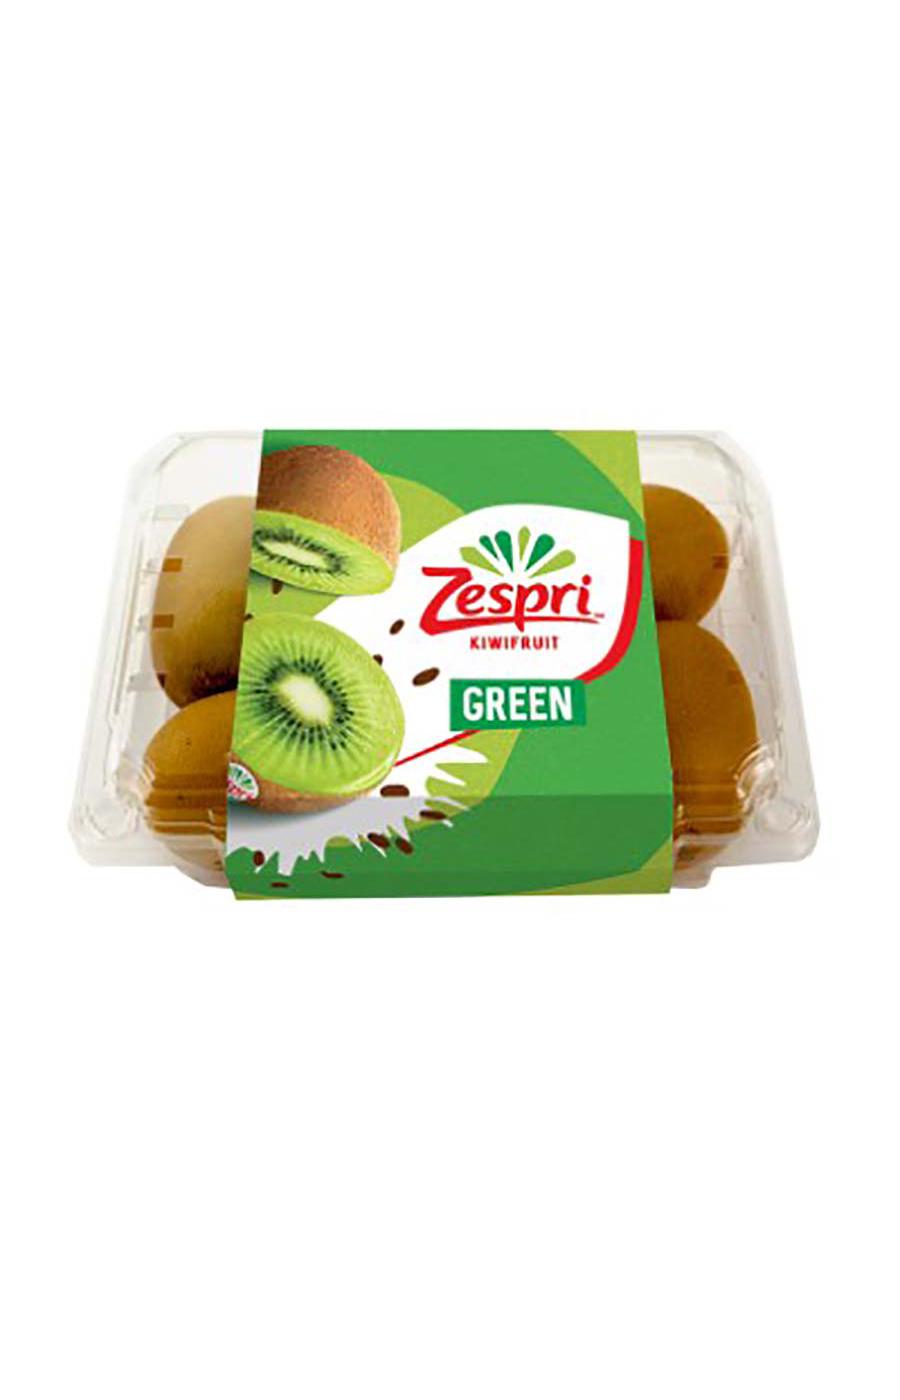 Zespri Clamshell Green Kiwi Fruit; image 1 of 2